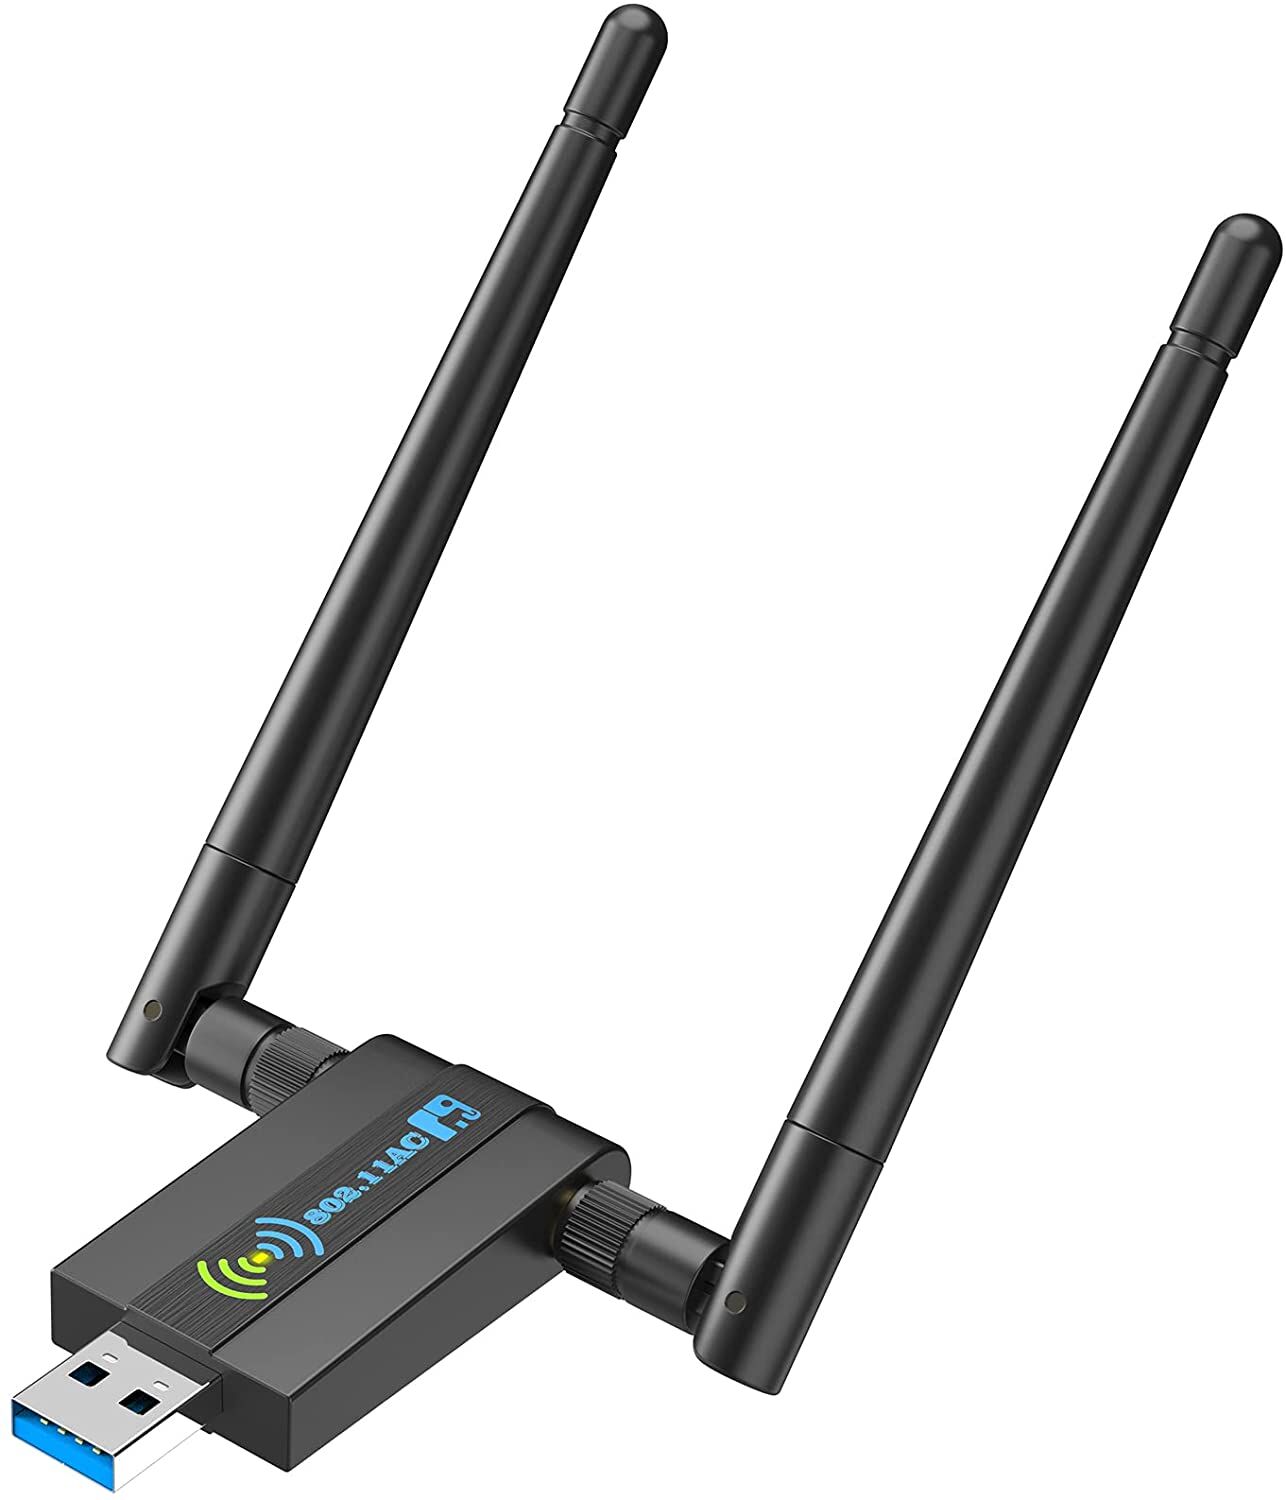 CXFTEOXK Wireless USB WiFi Adapter For PC